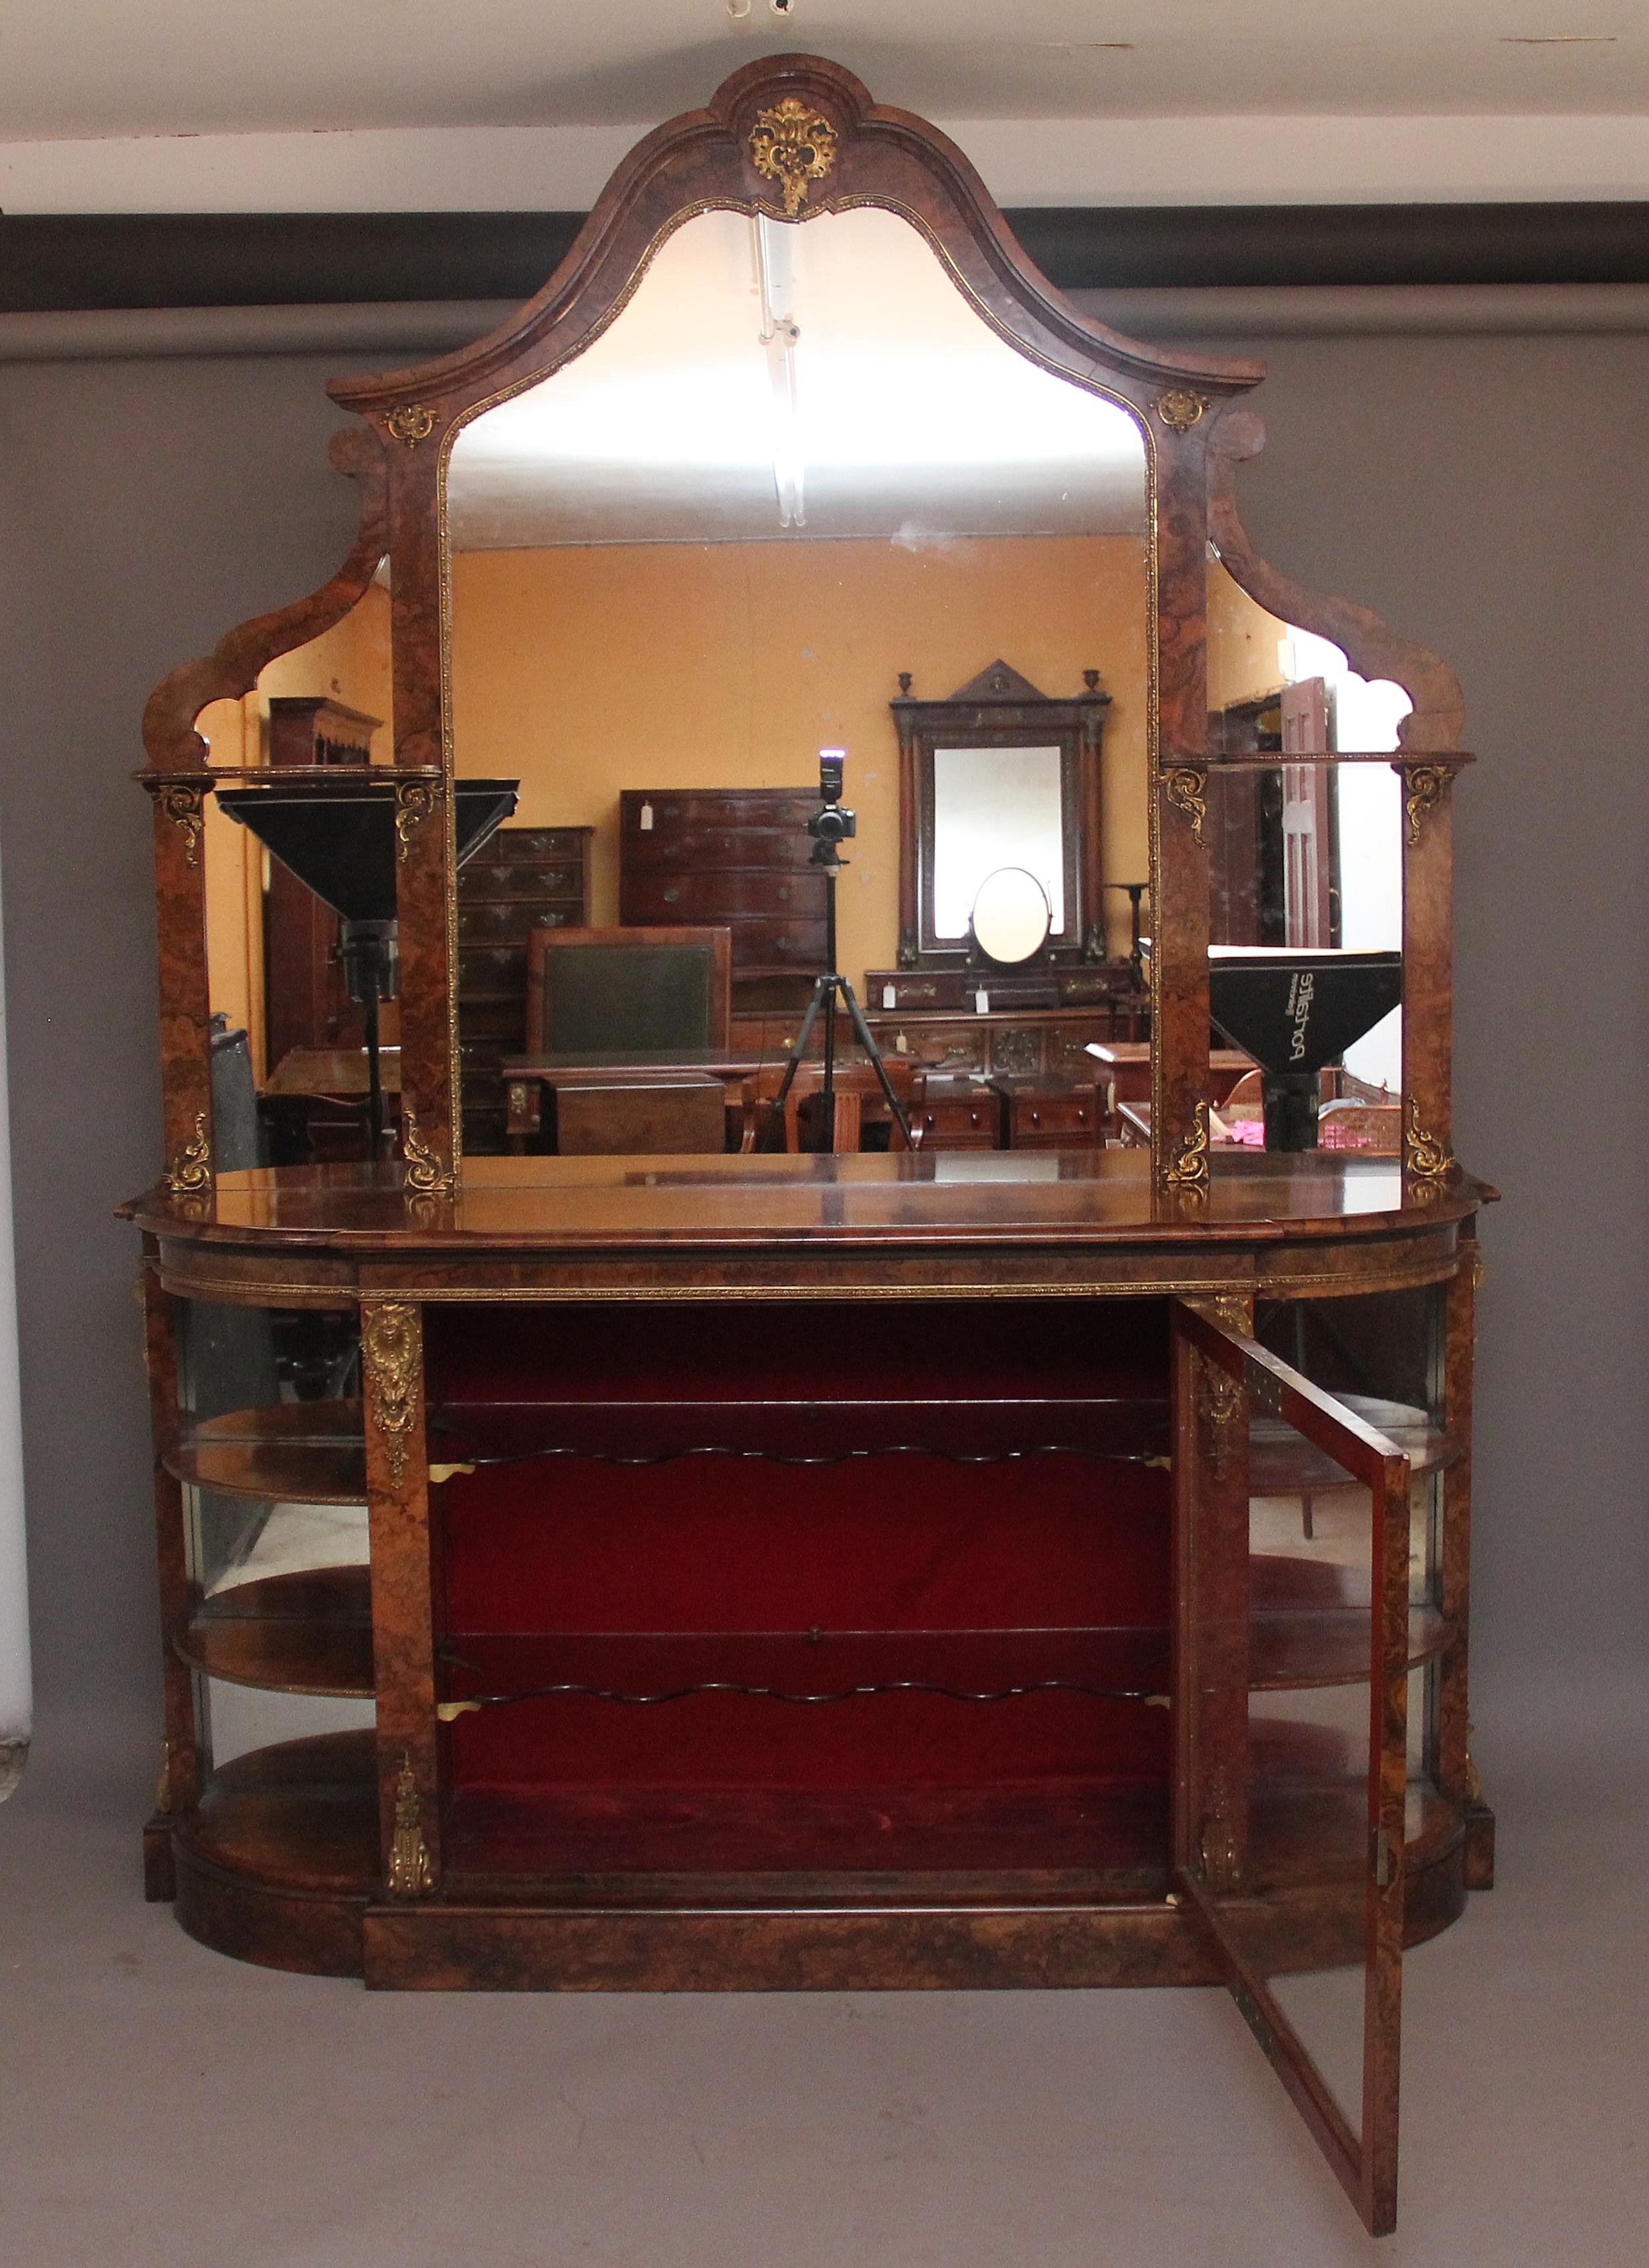 Eine Ausstellung Qualität 19. Jahrhundert Wurzelholz Spiegel zurück Kredenz, die geformte Spiegel zurück oben, bestehend aus einem großen zentralen Spiegel und zwei kleinere Spiegel auf jeder Seite, dekorative gewölbte Oberseite und geformten Rahmen